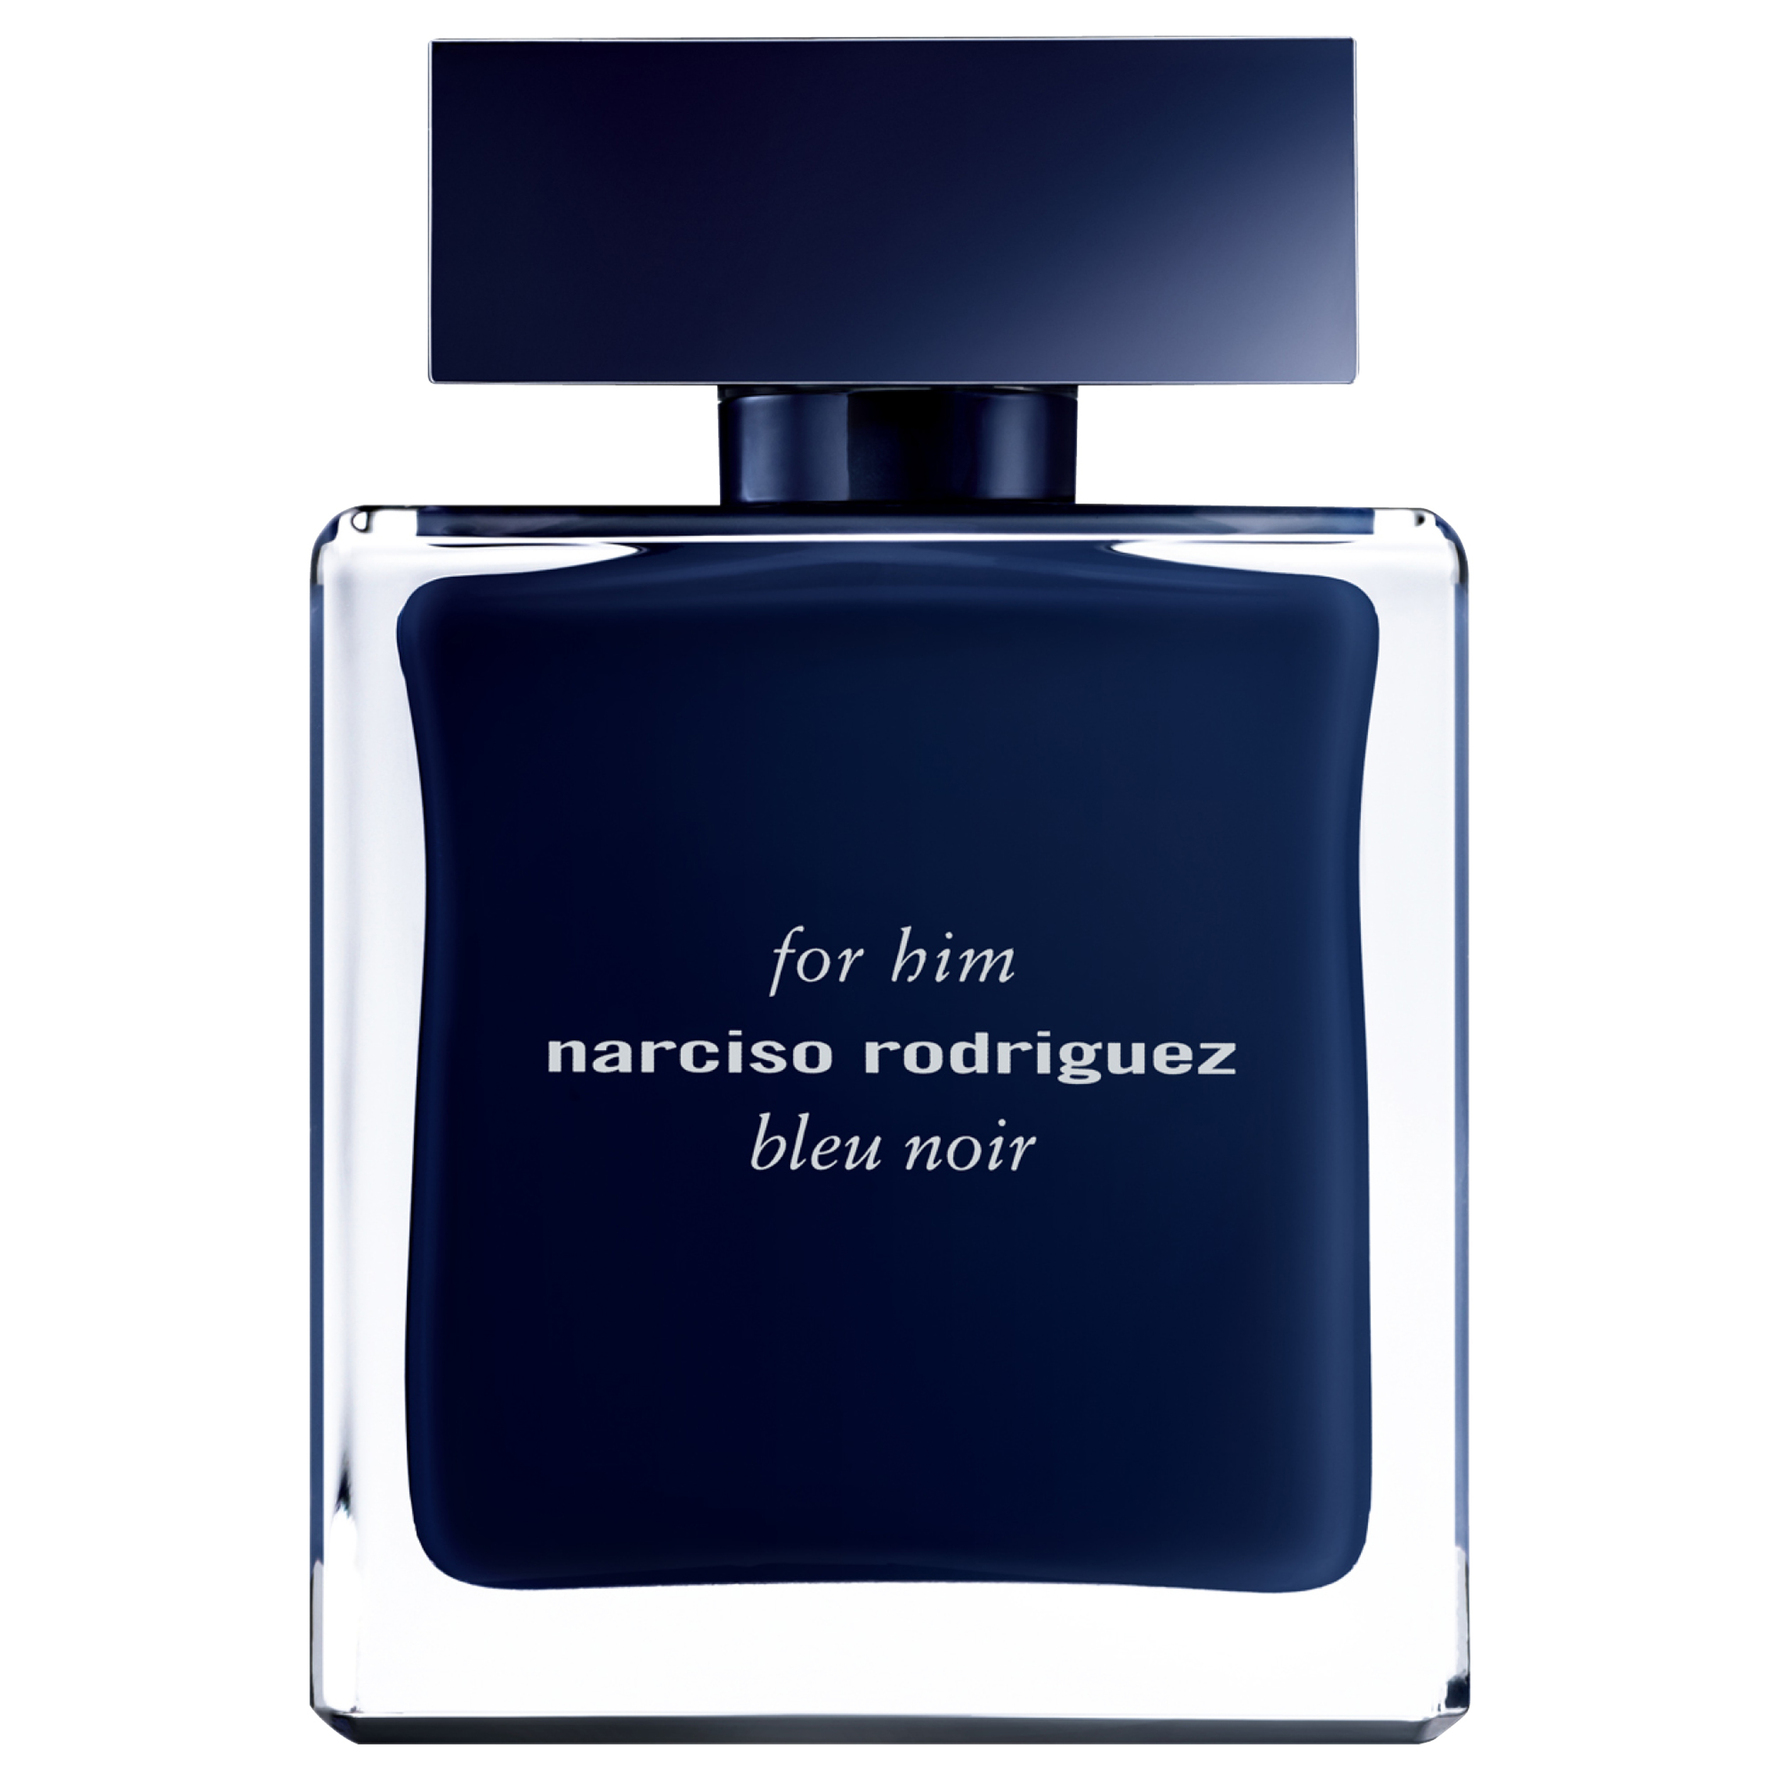 Narciso Rodriguez parfume - Se tilbud og køb hos